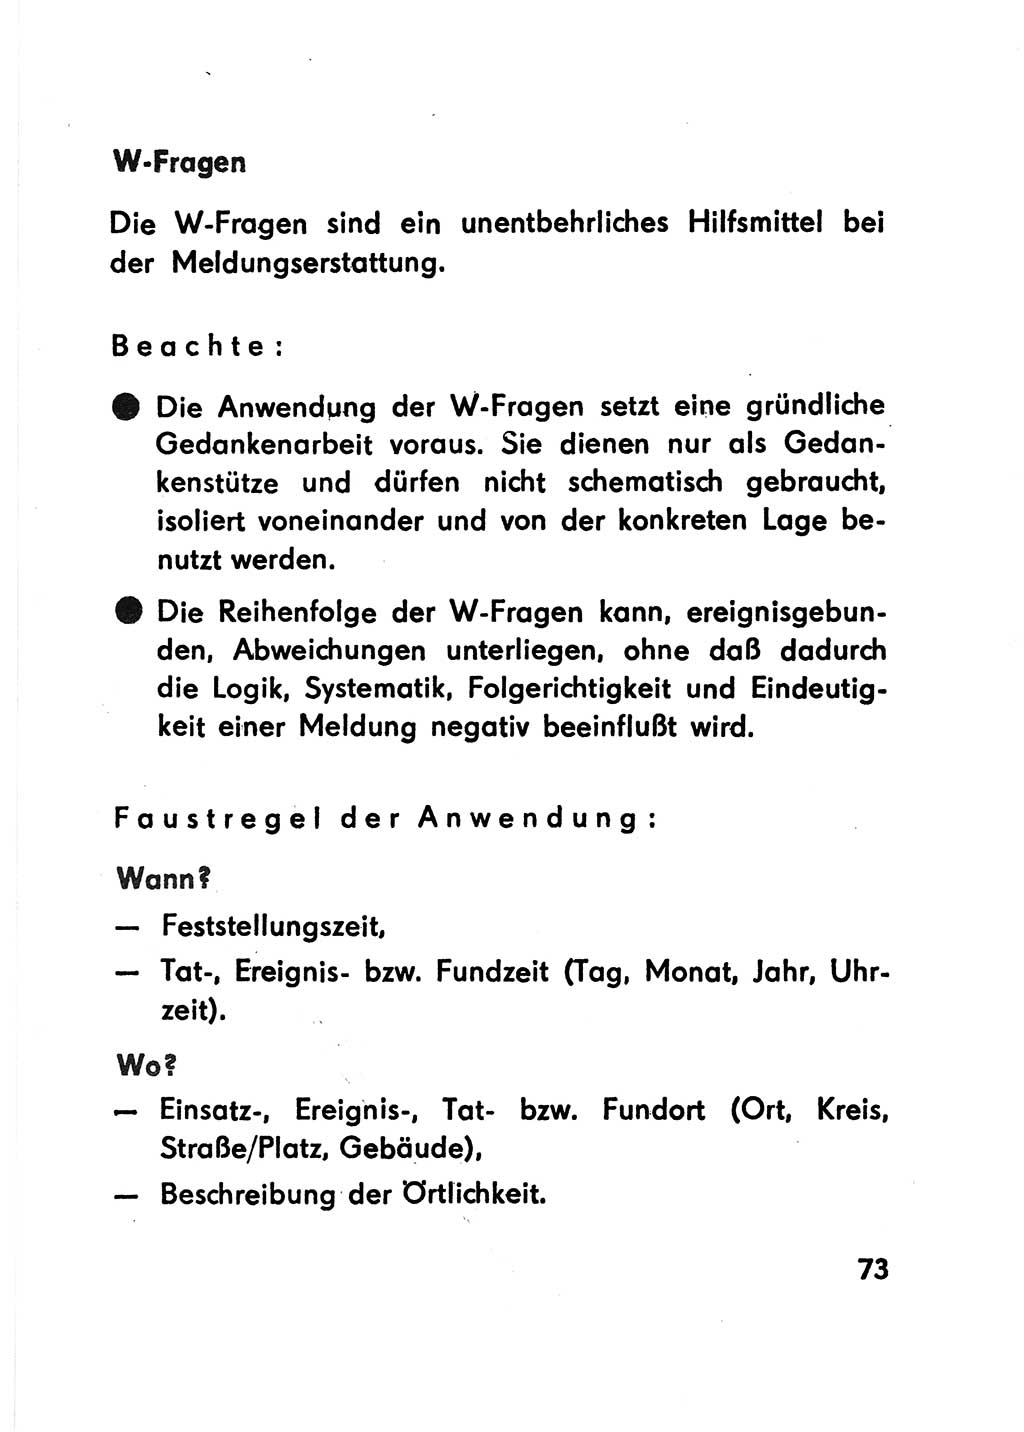 Merkbuch für SV-Angehörige [Strafvollzug (SV) Deutsche Demokratische Republik (DDR)] 1975, Seite 73 (SV-Angeh. DDR 1975, S. 73)